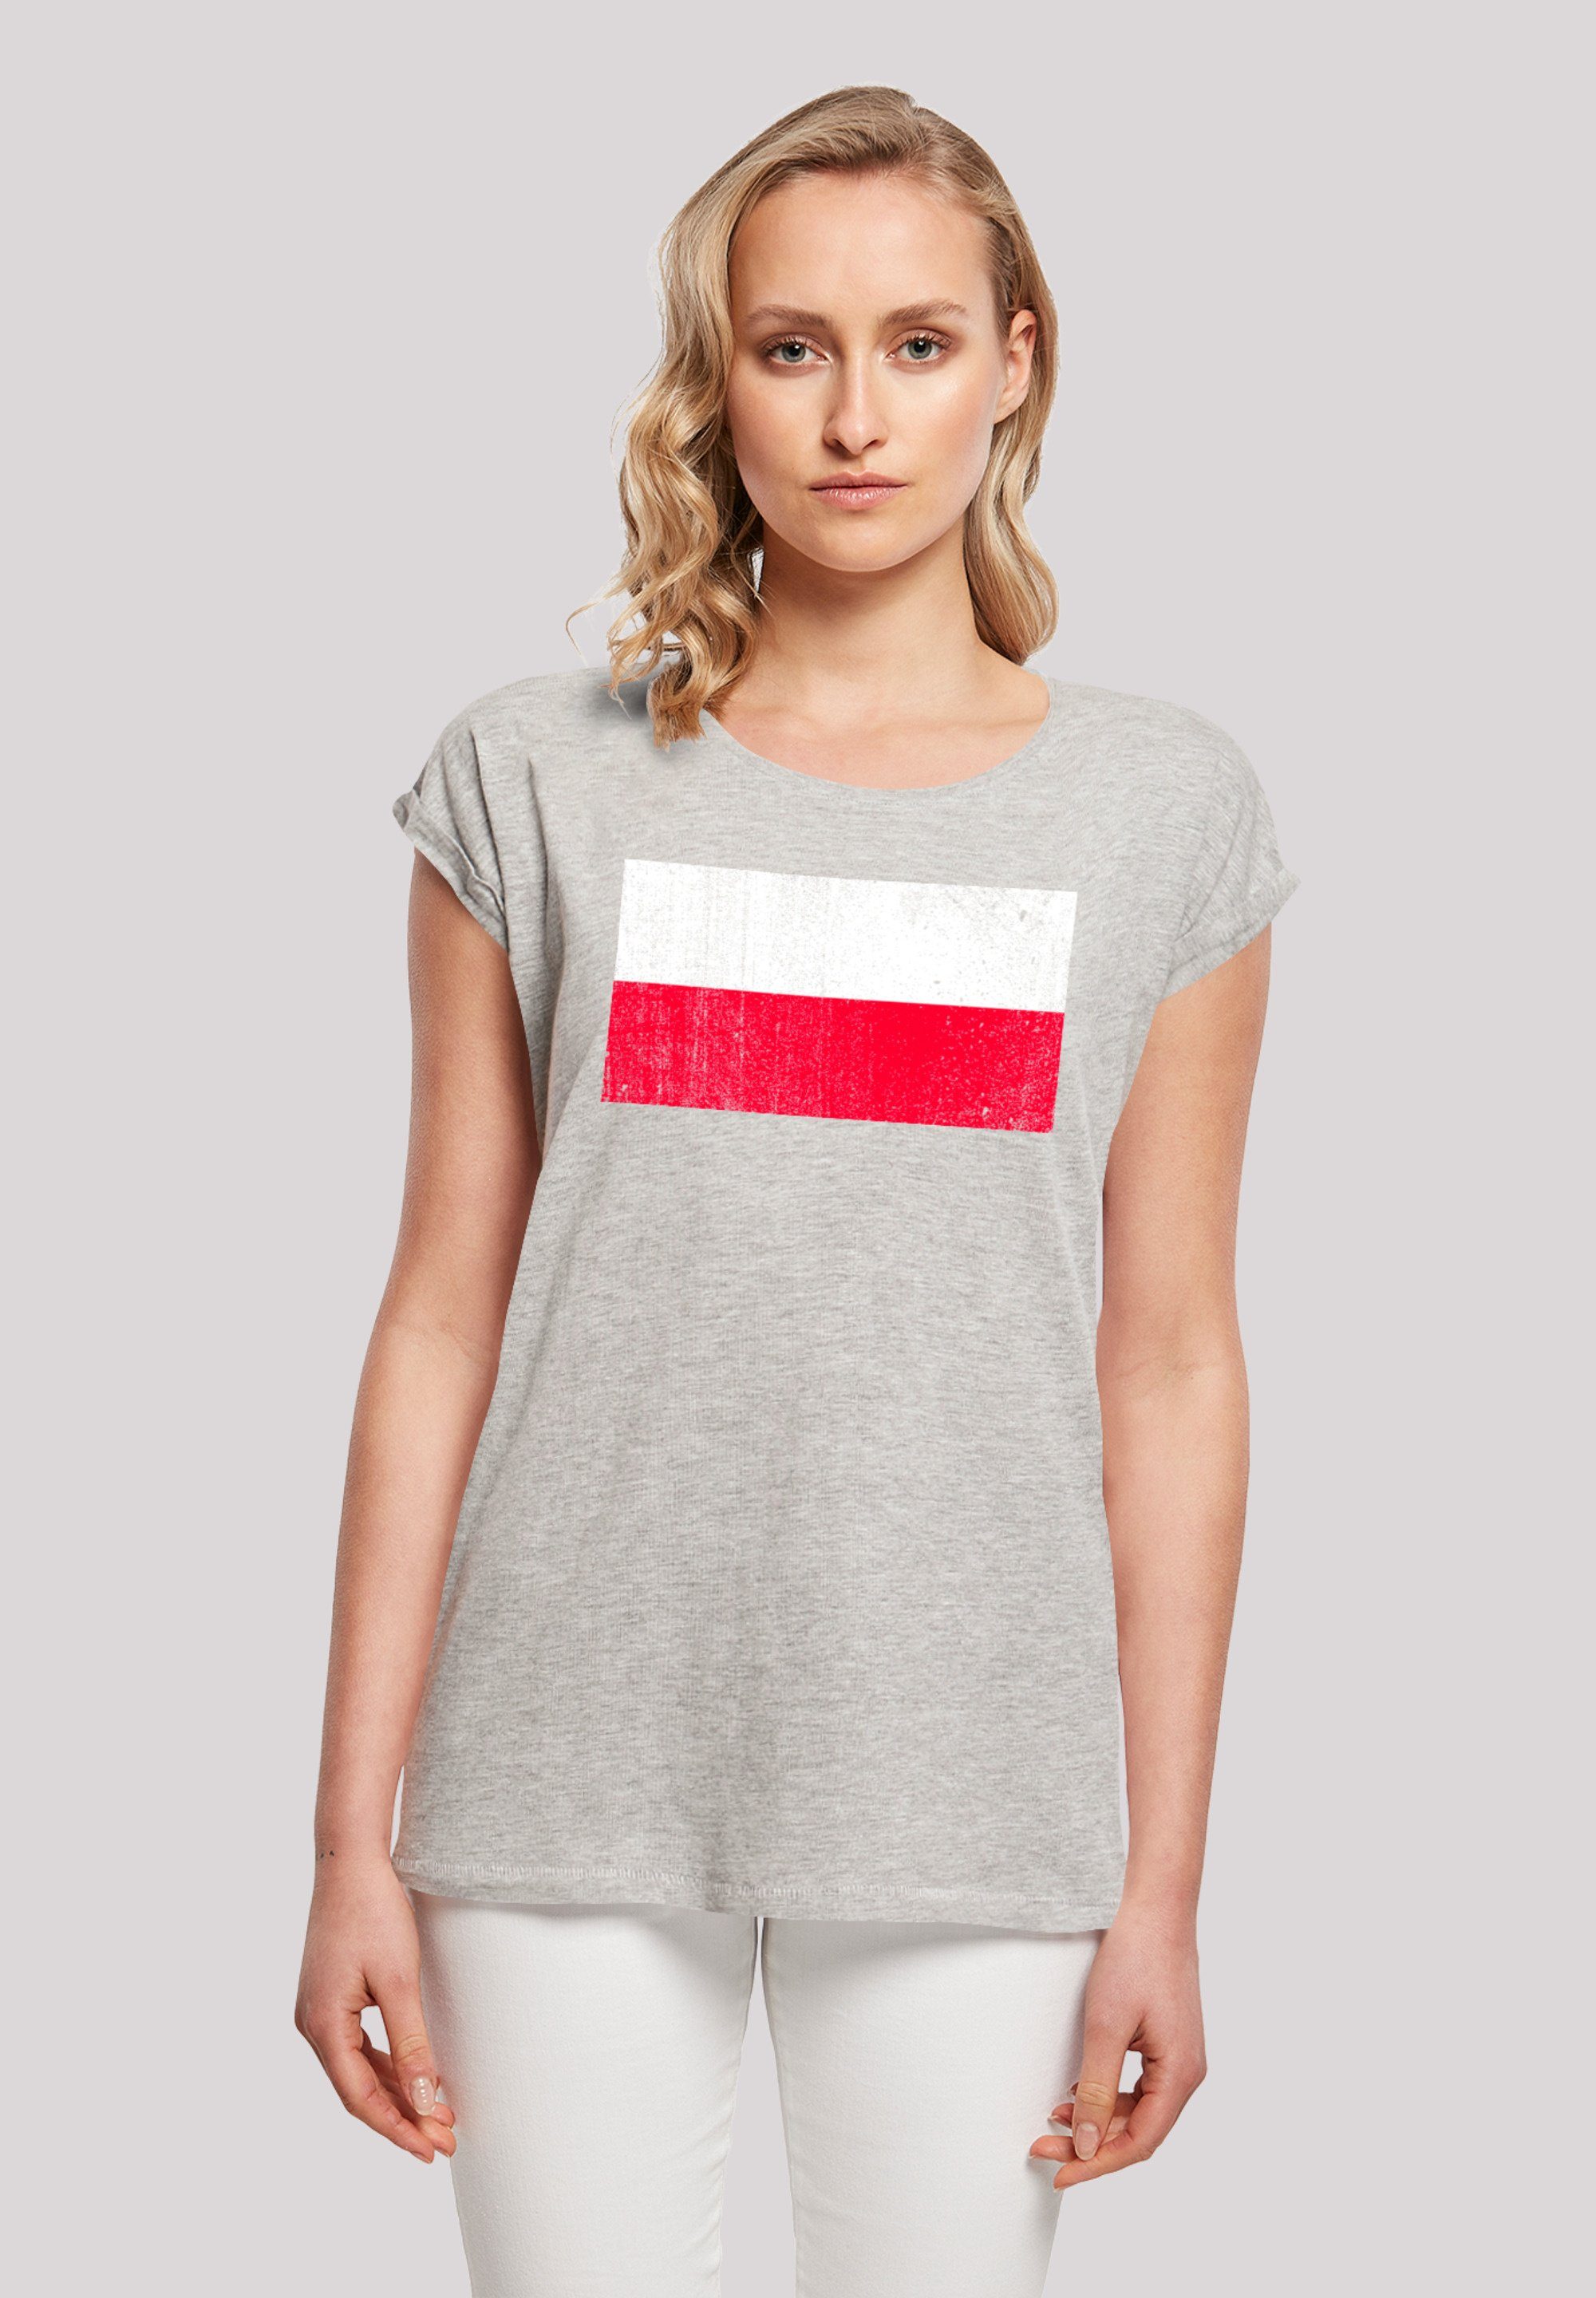 T-Shirt Flagge ist Model Größe Das M cm groß F4NT4STIC 170 distressed und Poland trägt Print, Polen